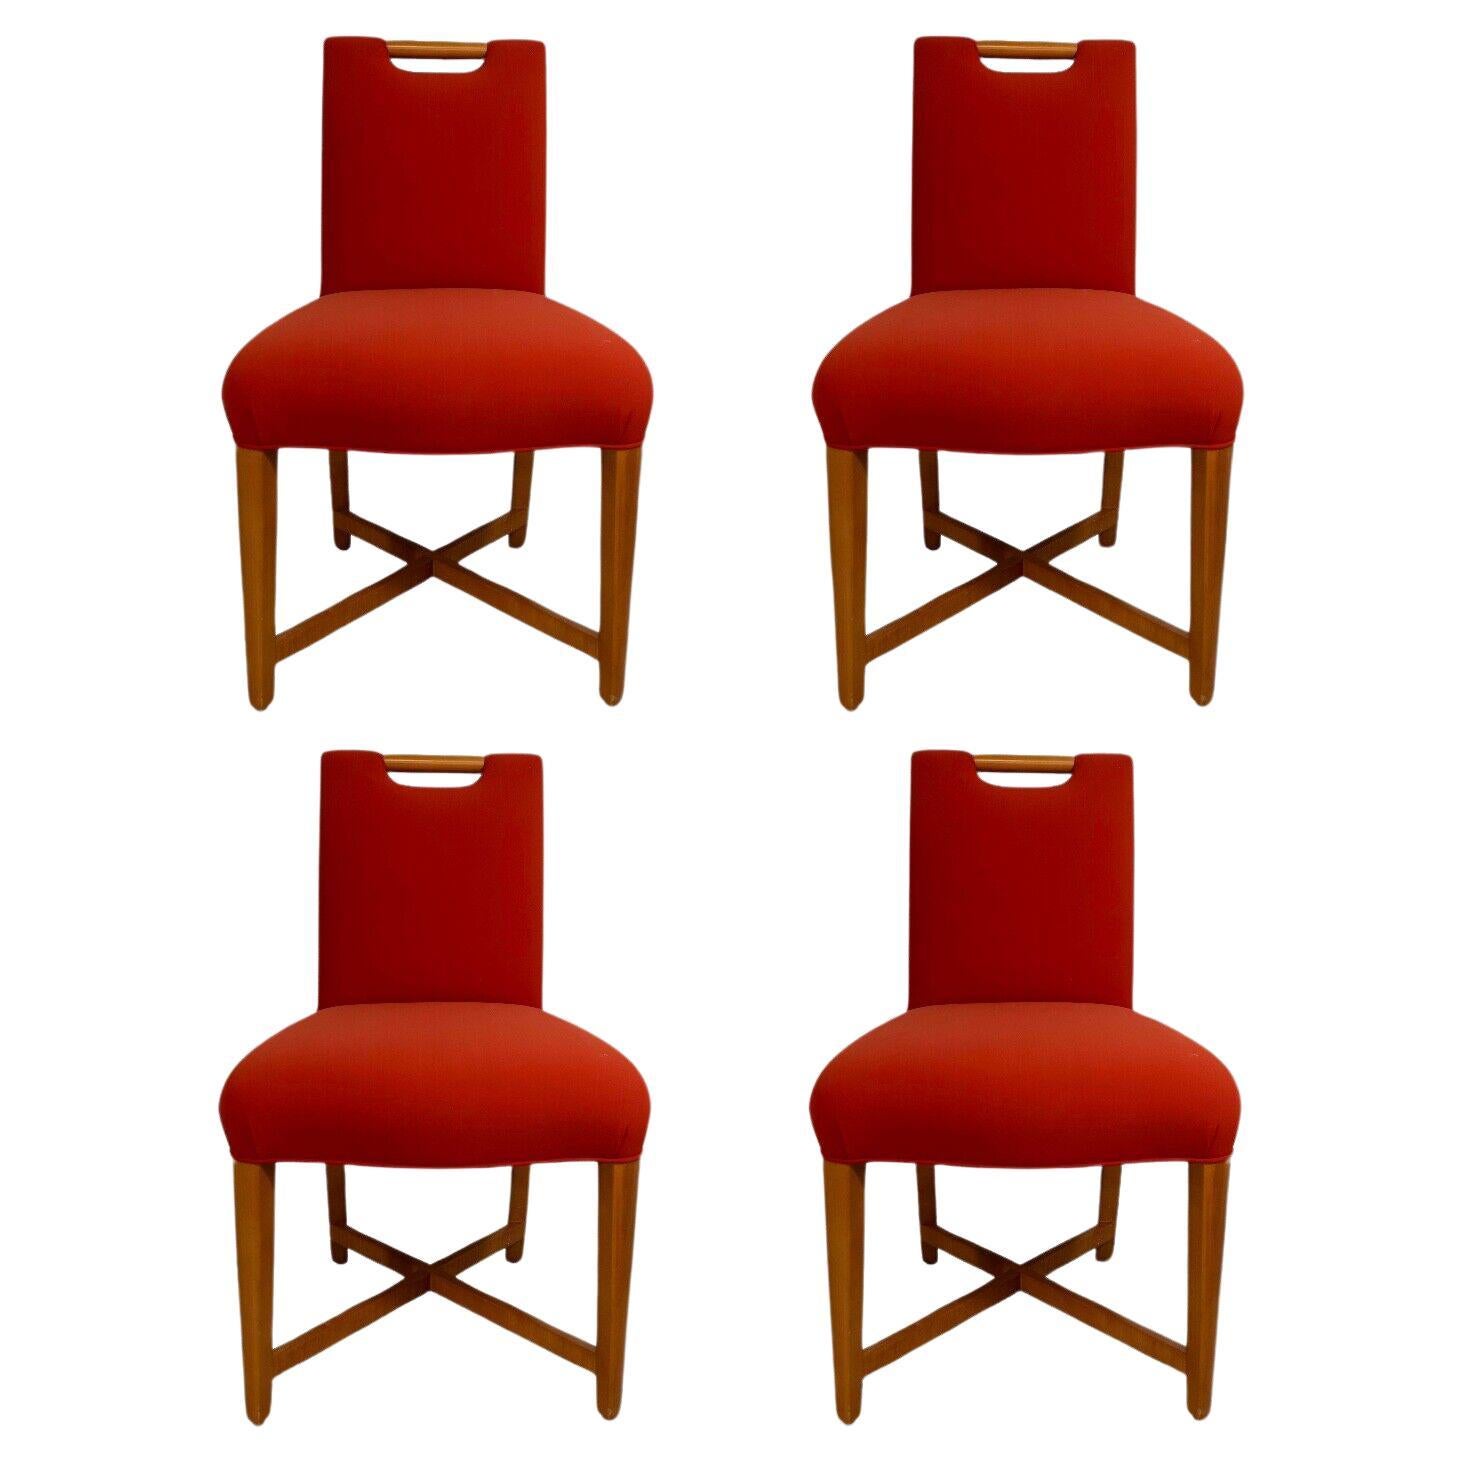 Donghia Set of 4 Orange and Wood Side Chairs Mid Century Modern Contemporary (Ensemble de 4 chaises d'appoint en bois et orange)